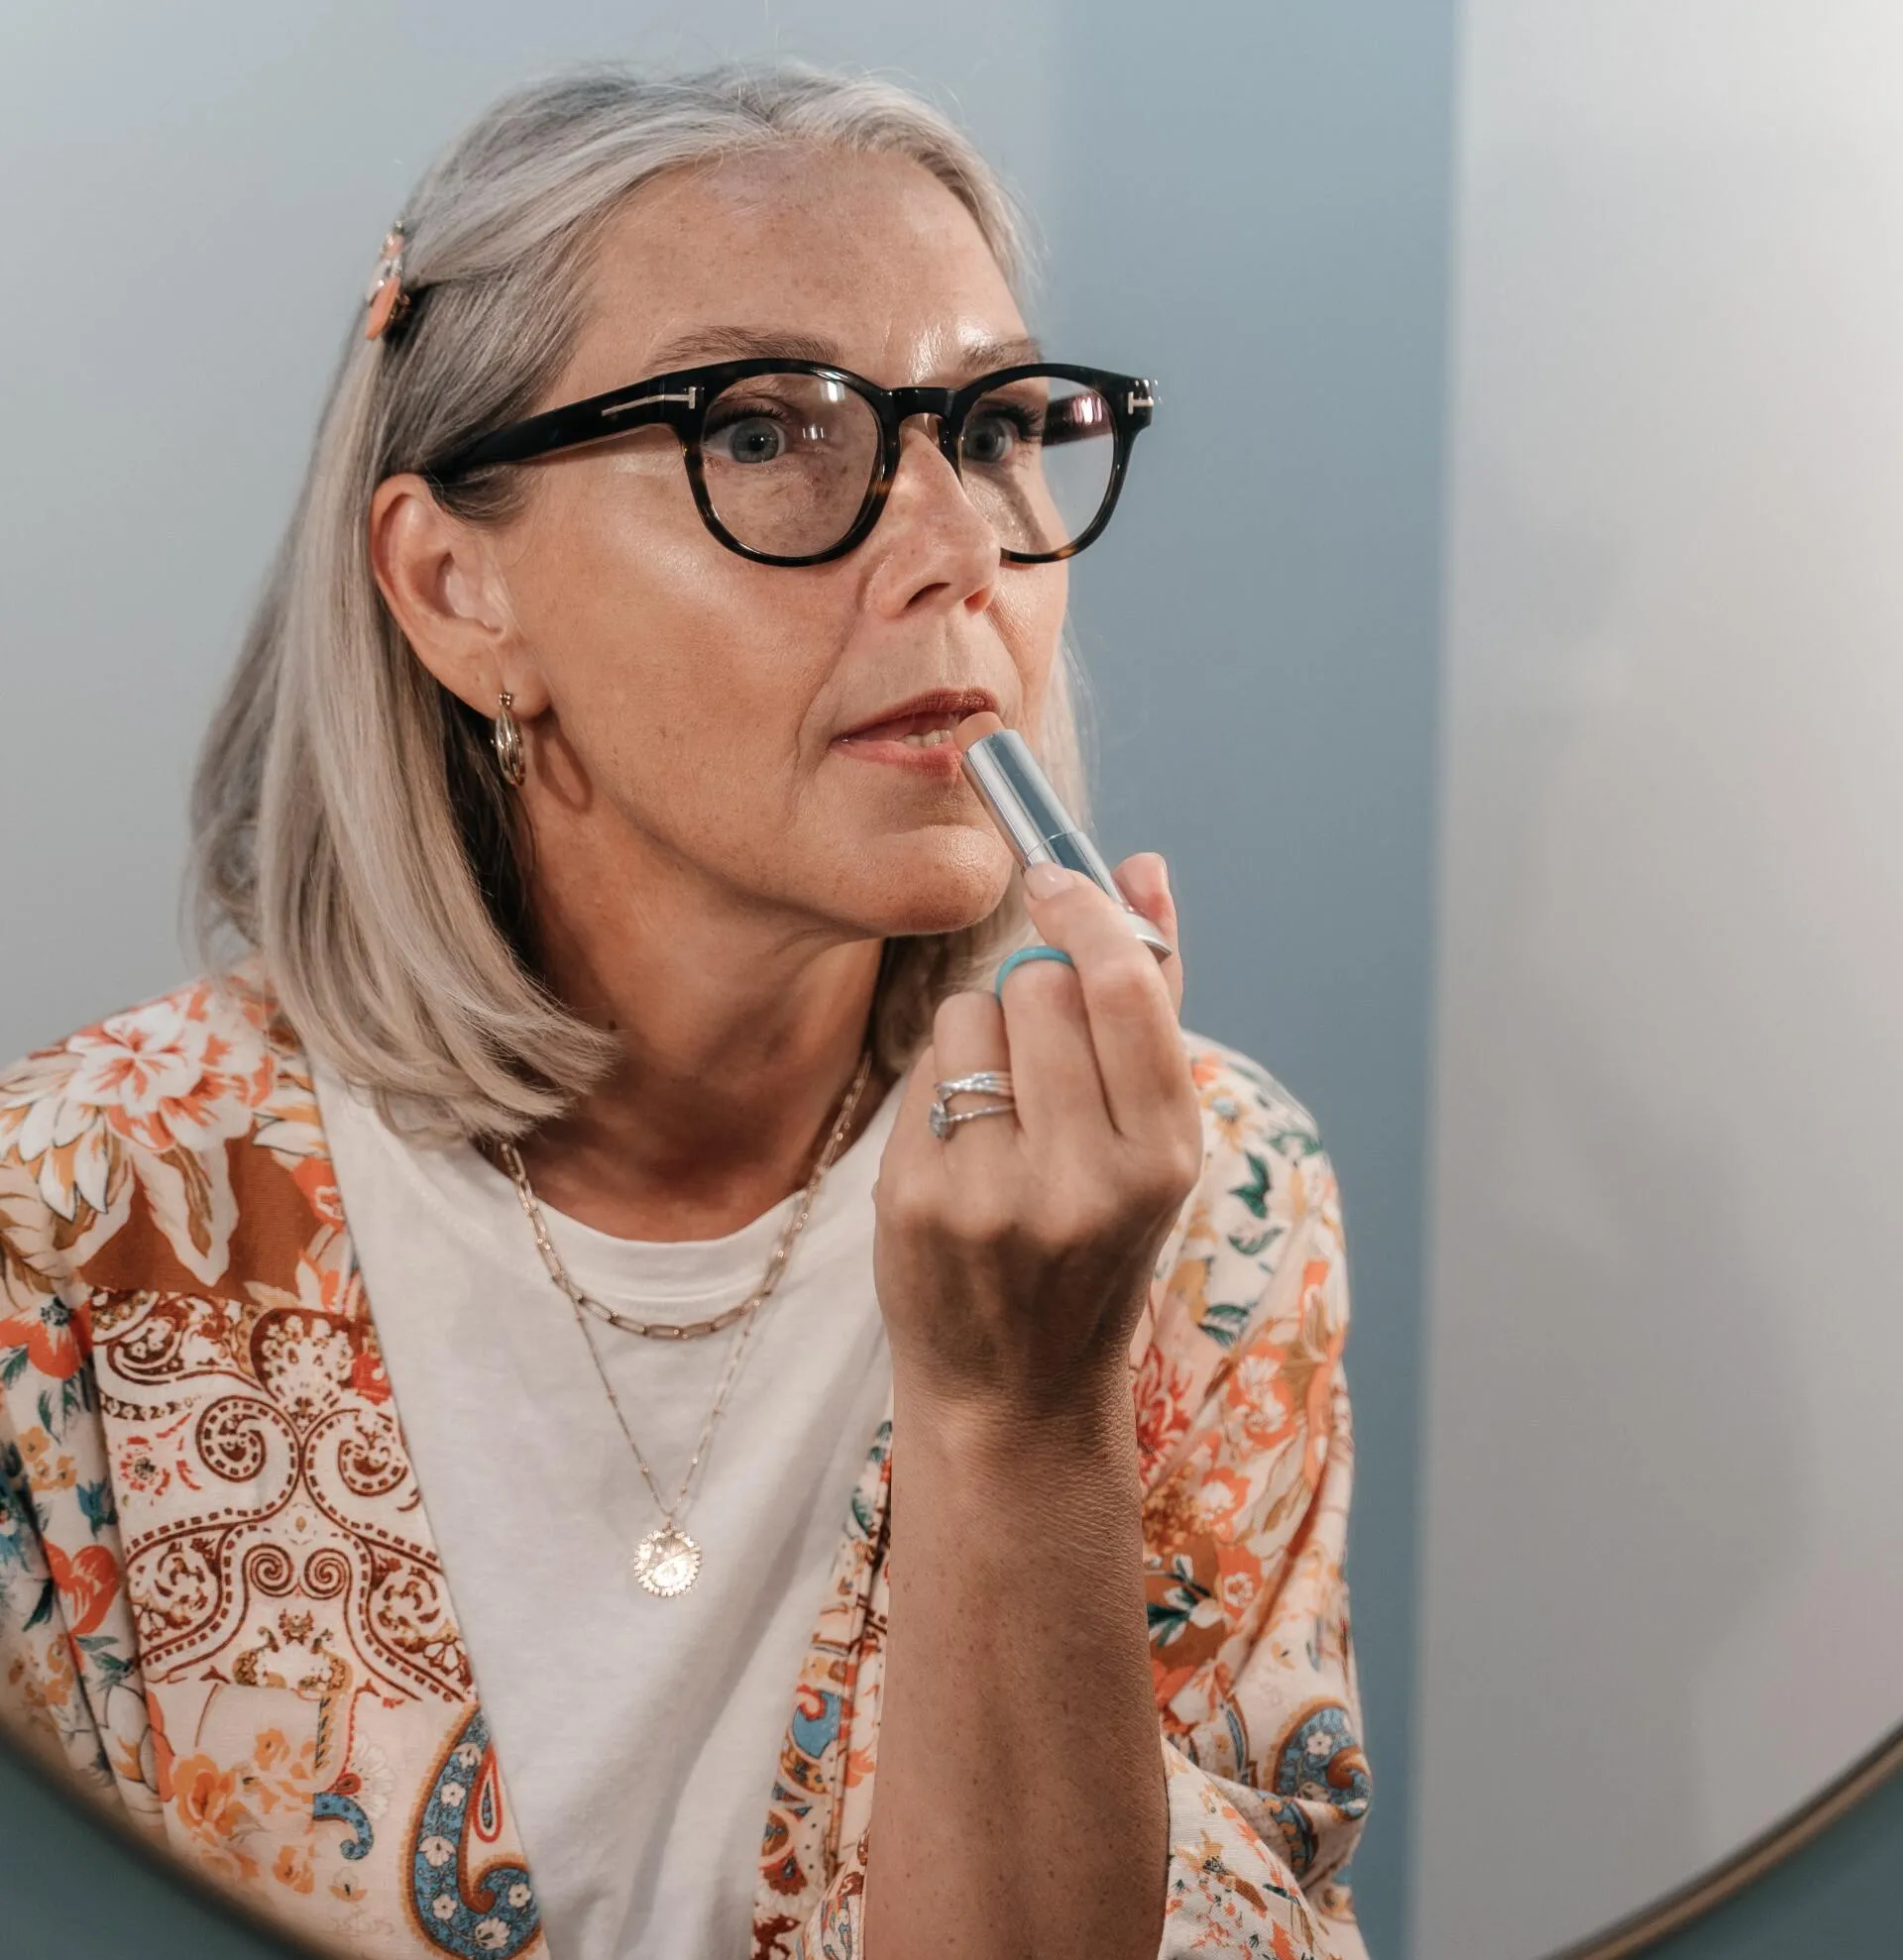 Old woman applying lipstick | Femme Moderne Center for Aesthetics in Draper, Utah